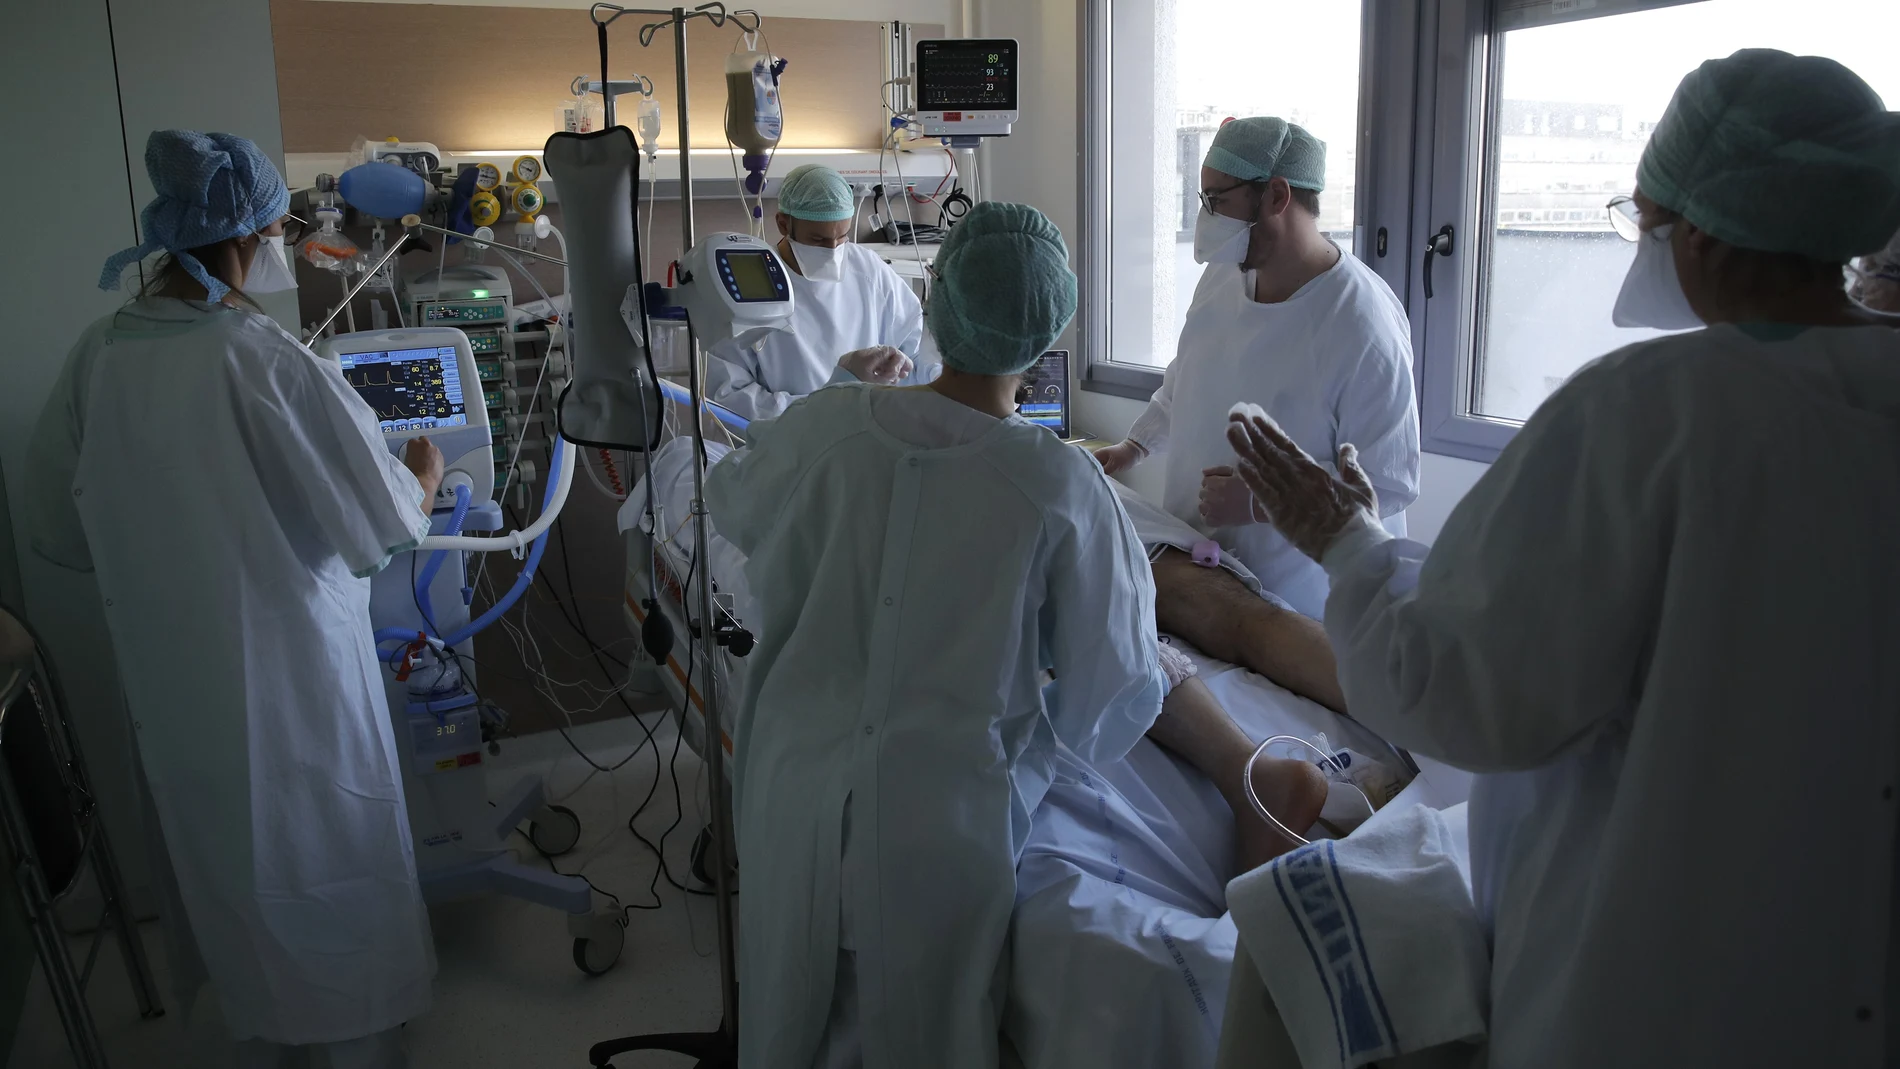 El personal médico atiende a un paciente afectado por el virus COVID-19 en la unidad de cuidados intensivos del hospital público Charles Nicolle, el jueves 15 de abril de 2021 en Rouen, Normandía